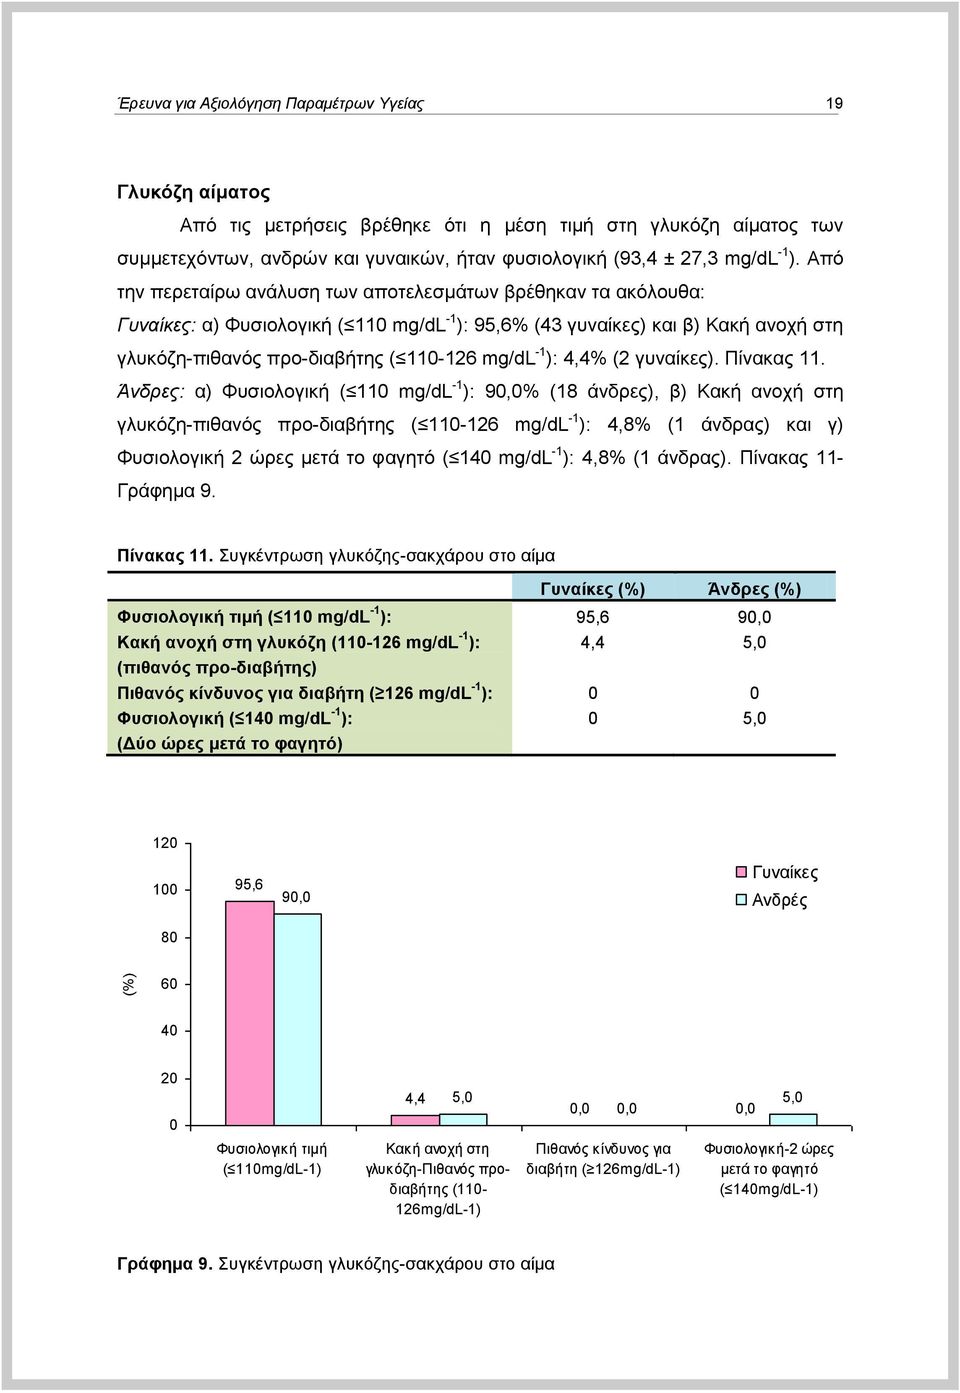 Από ηελ πεξεηαίξσ αλάιπζε ησλ απνηειεζκάησλ βξέζεθαλ ηα αθόινπζα: Γςναίκερ: α) Φπζηνινγηθή ( 110 mg/dl -1 ): 95,6% (43 γπλαίθεο) θαη β) Καθή αλνρή ζηε γιπθόδε-πηζαλόο πξν-δηαβήηεο ( 110-126 mg/dl -1